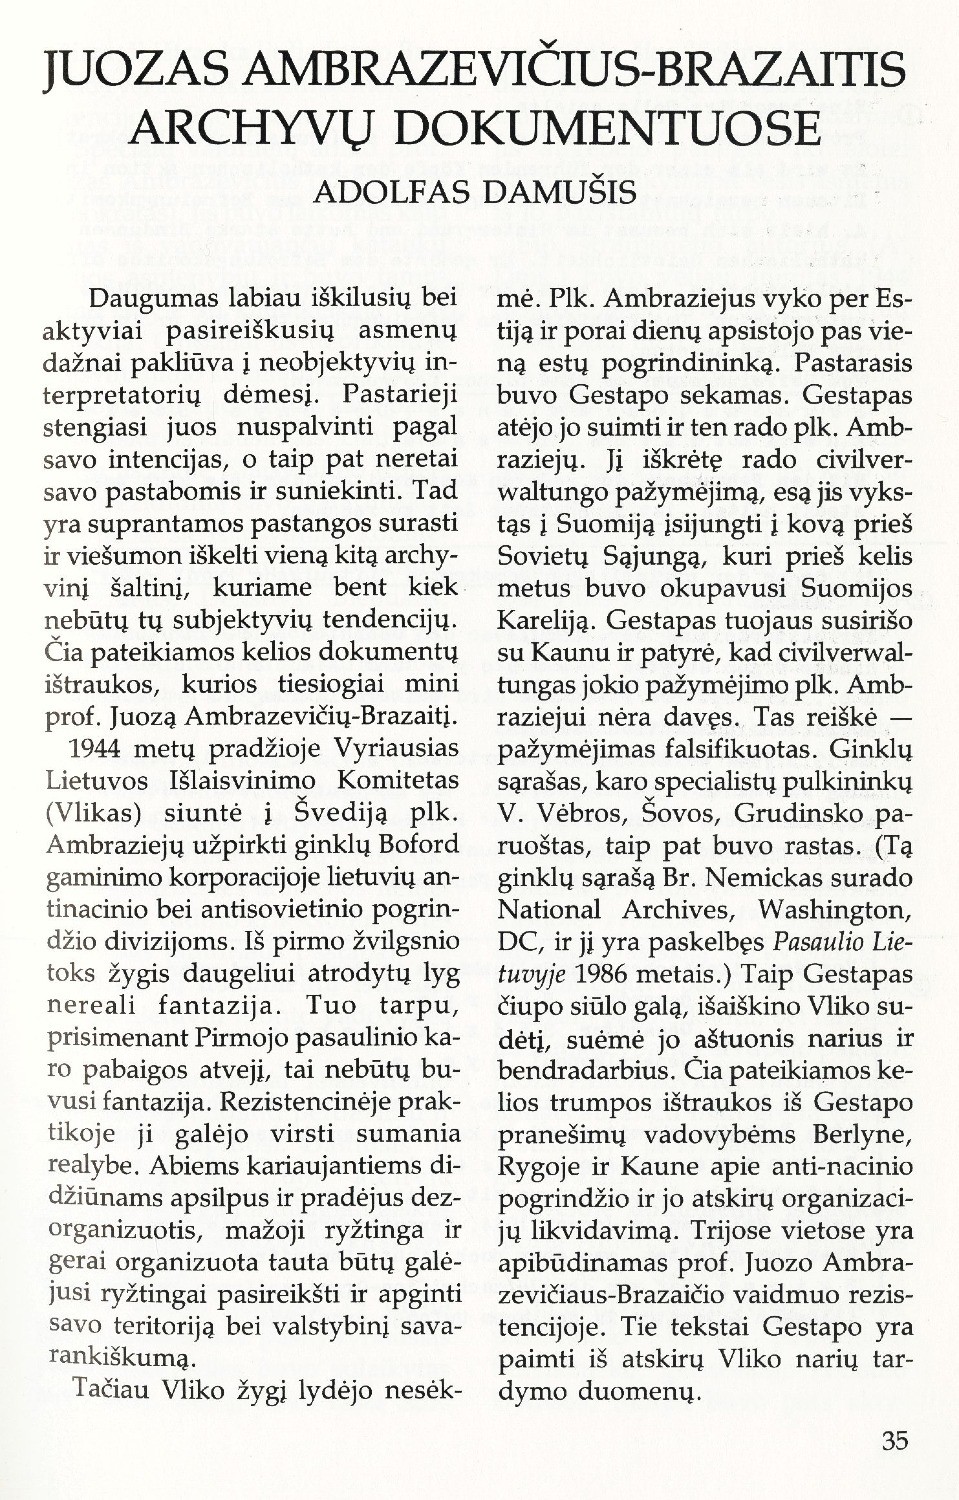 Juozas Ambrazevičius-Brazaitis archyvų dokumentuose / Adolfas Damušis // Į laisvę. – 1989-90, Nr. 107, p. 35–38.